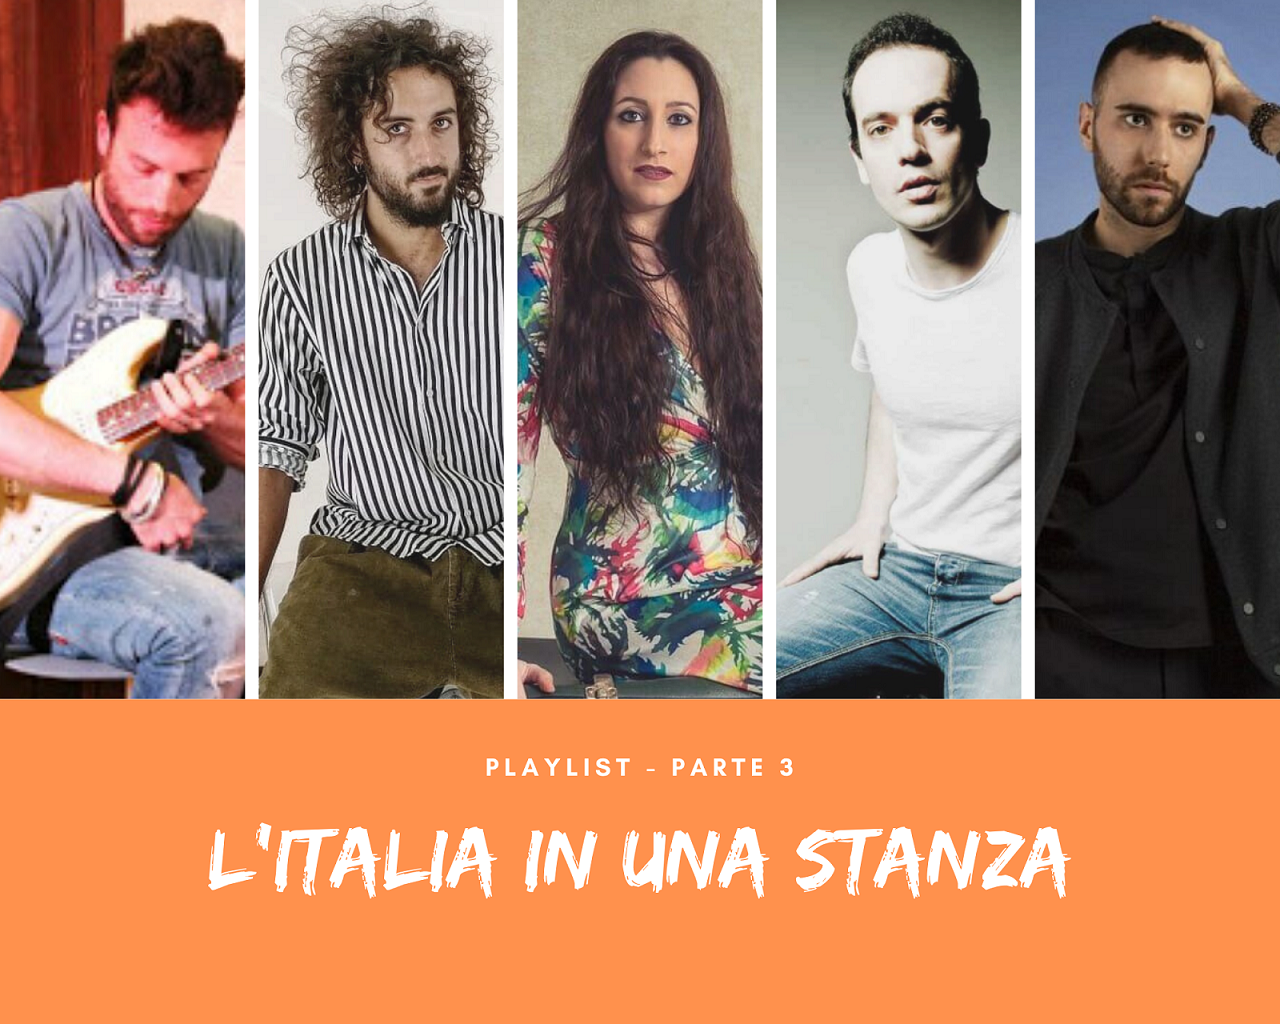 L’Italia in una stanza. Ecco la playlist ‘Parte 3’ dedicata agli artisti da scoprire!